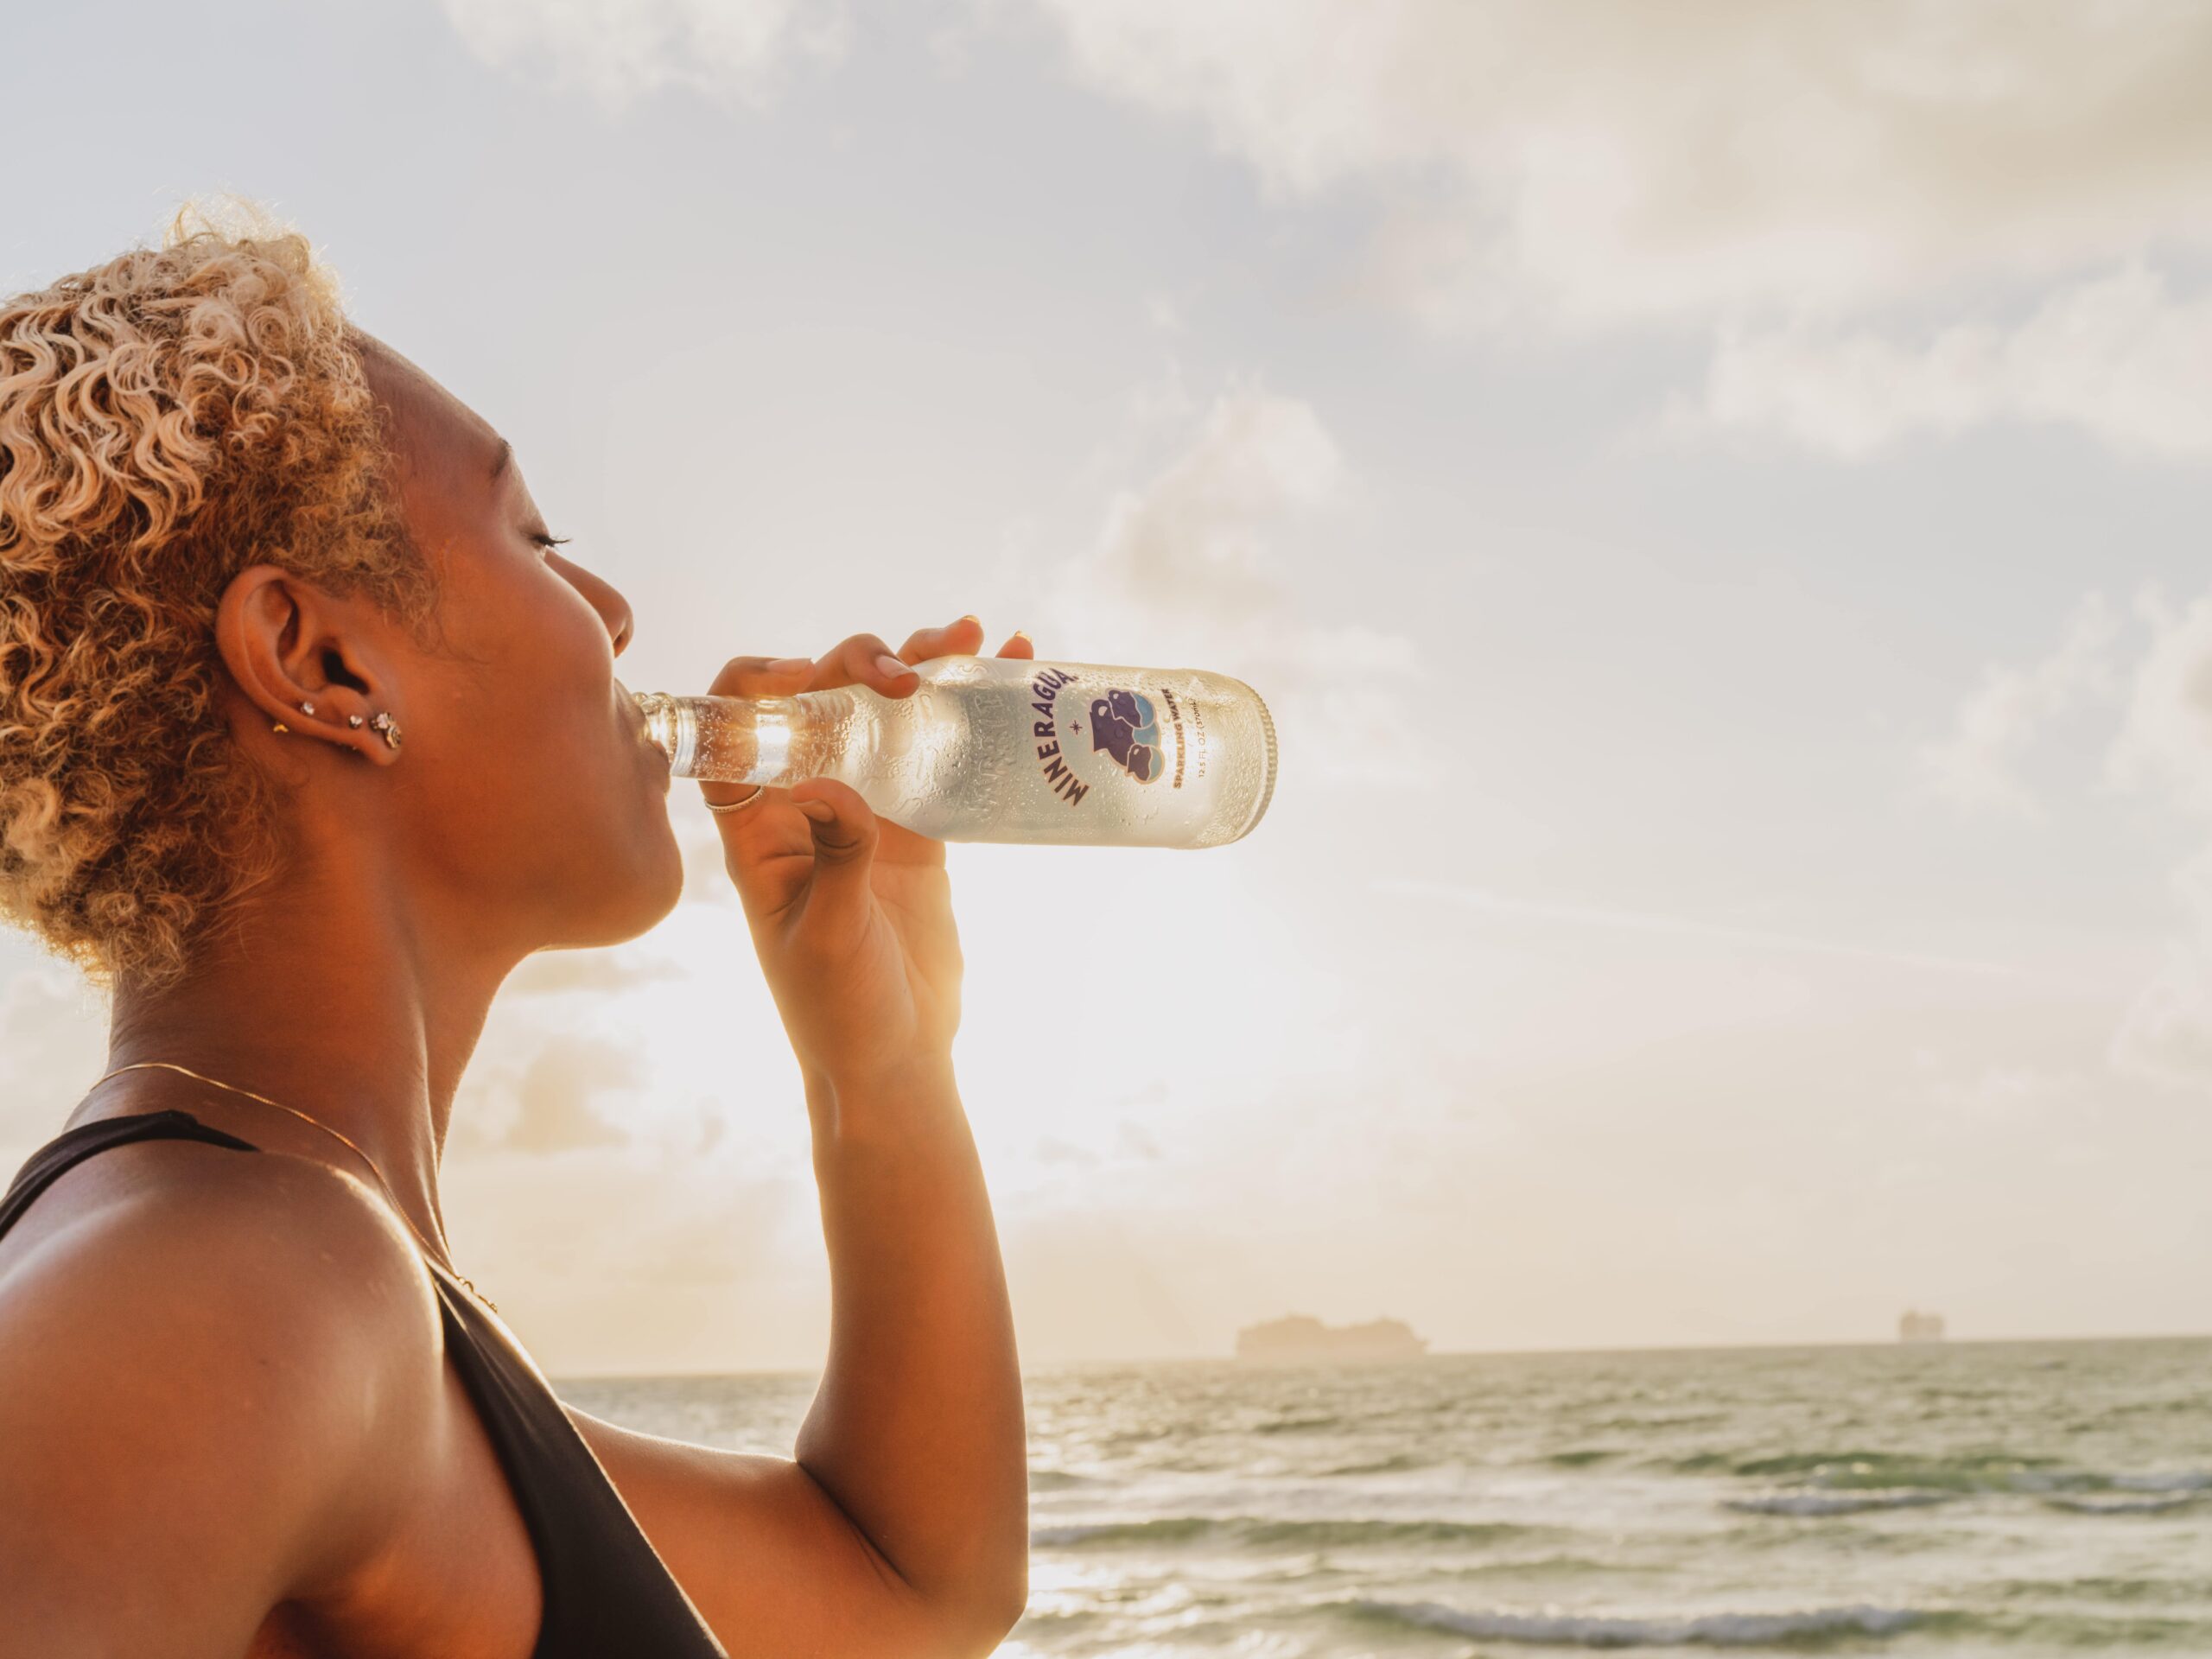 healthiest sparkling water brands